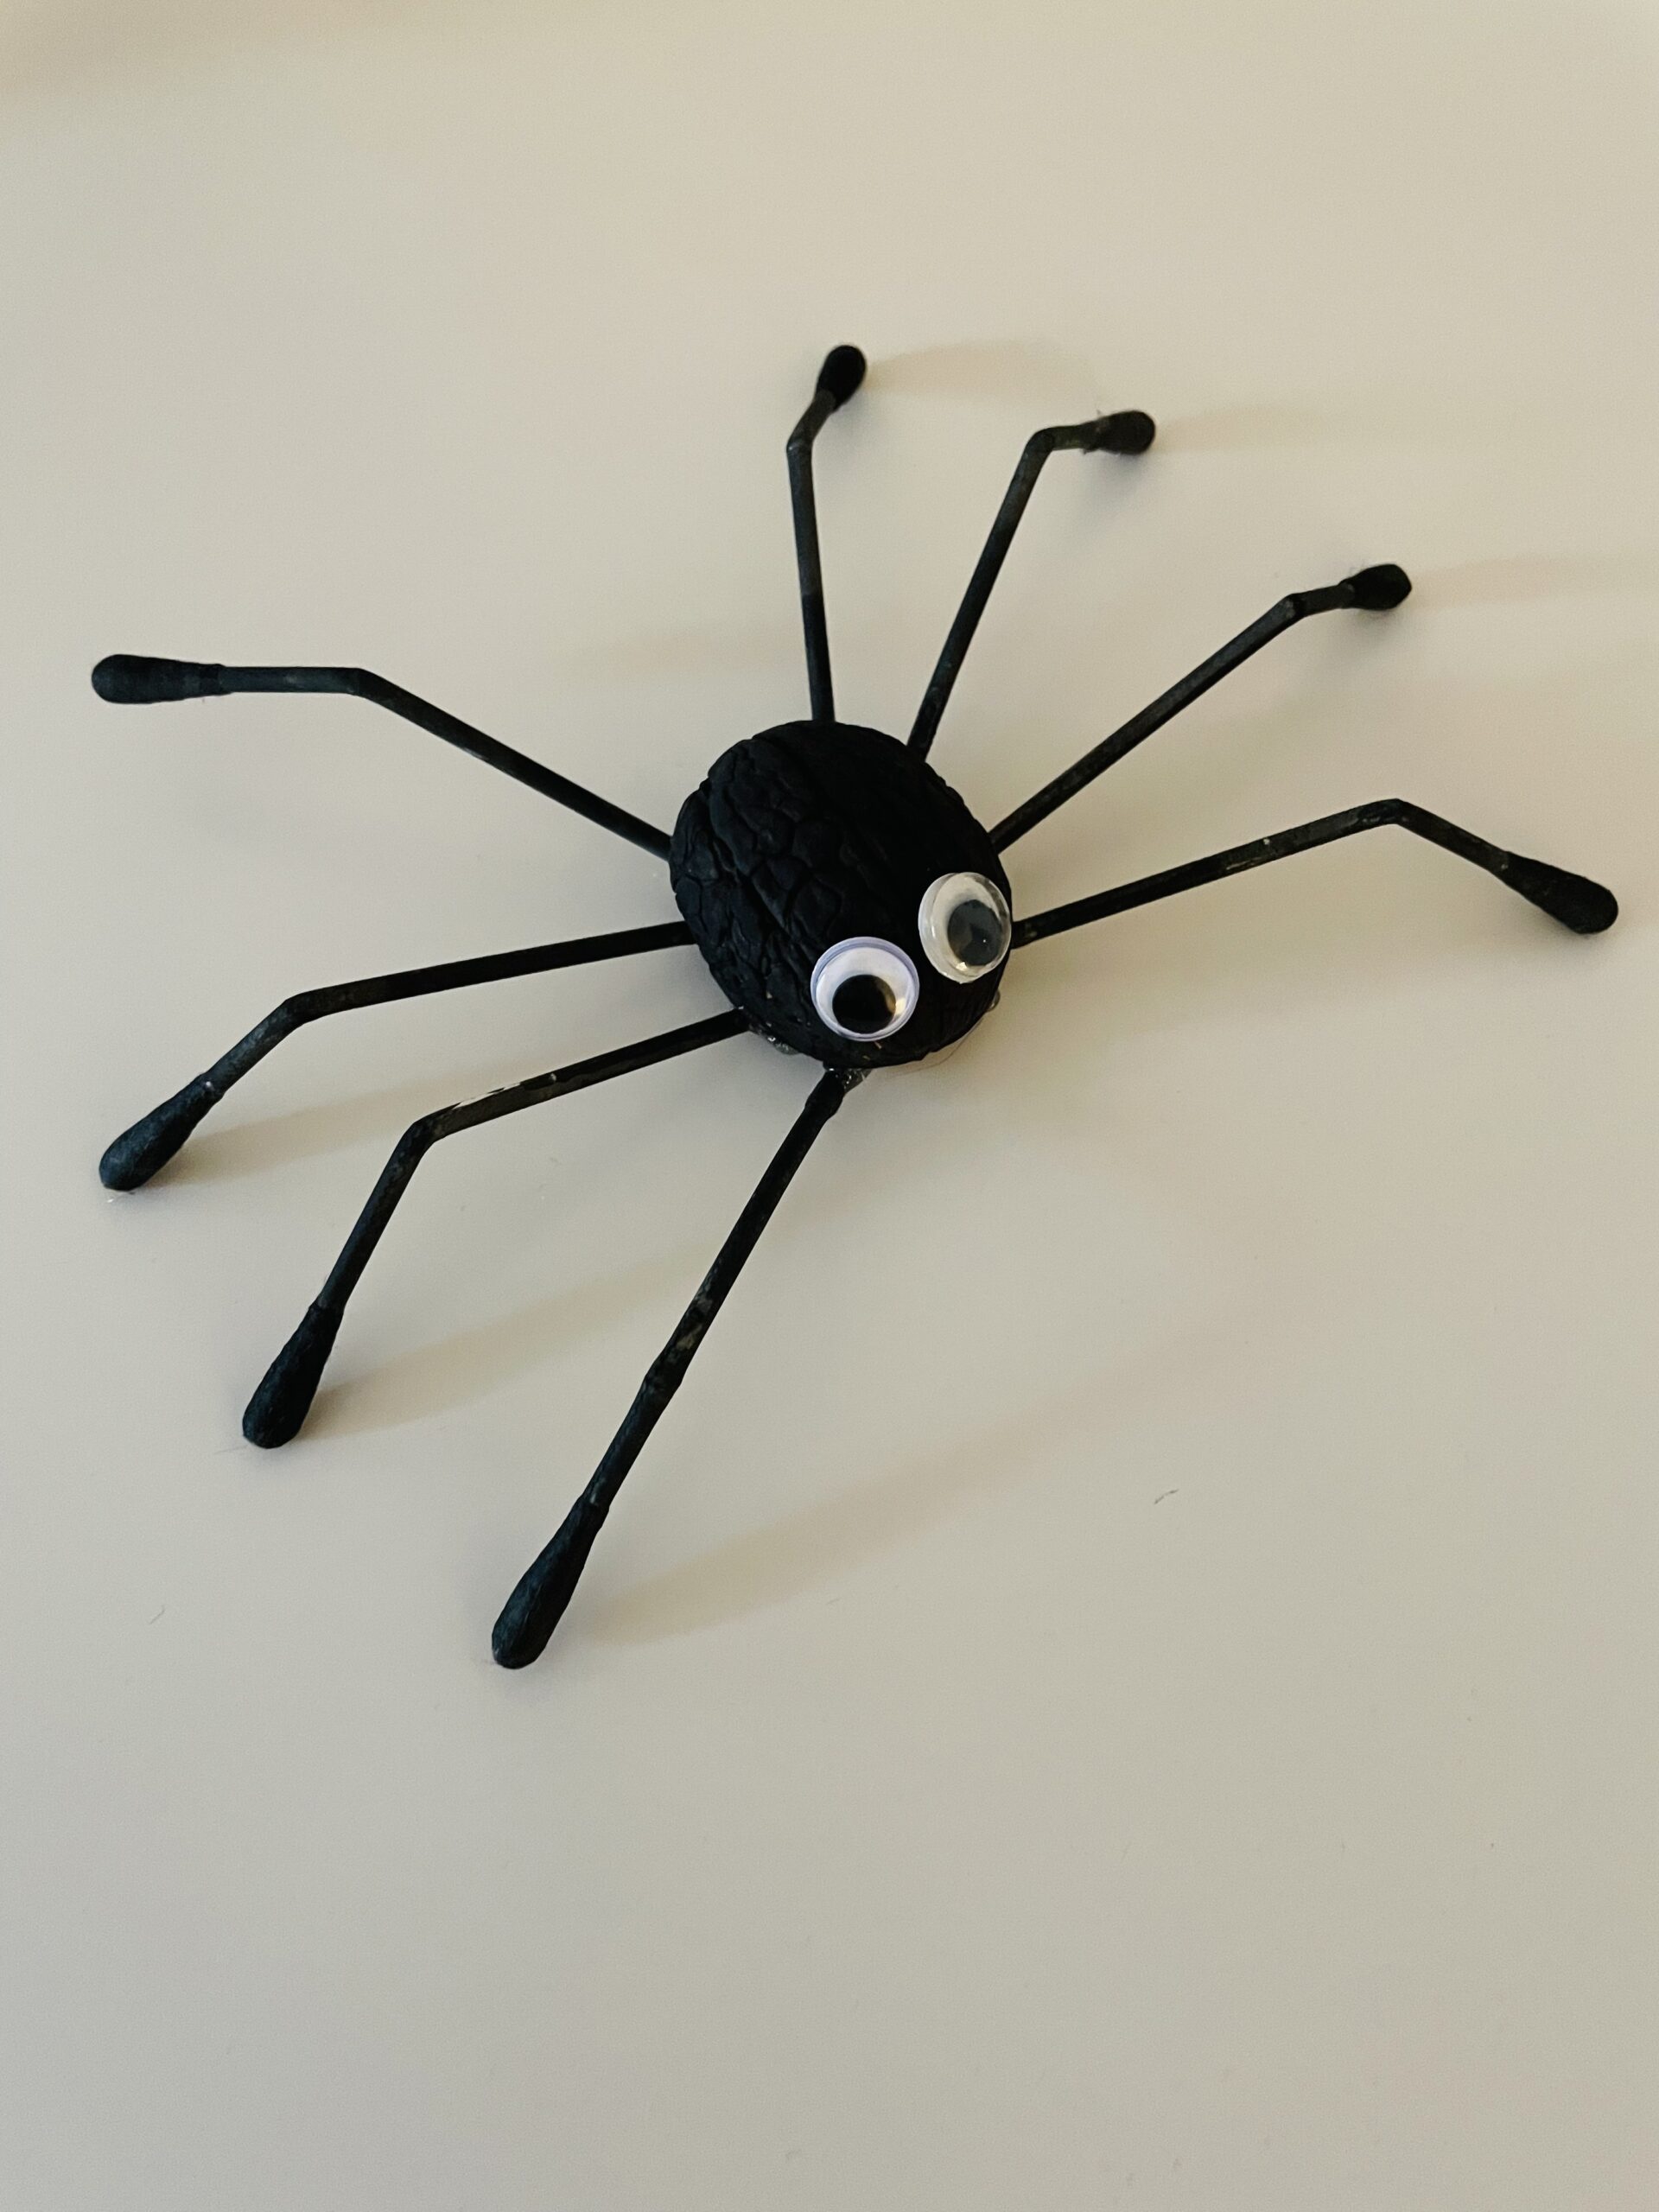 Bild zum Schritt 14 für das Bastel- und DIY-Abenteuer für Kinder: 'Erst dann dreht ihr die Spinne um und stellt ihr...'